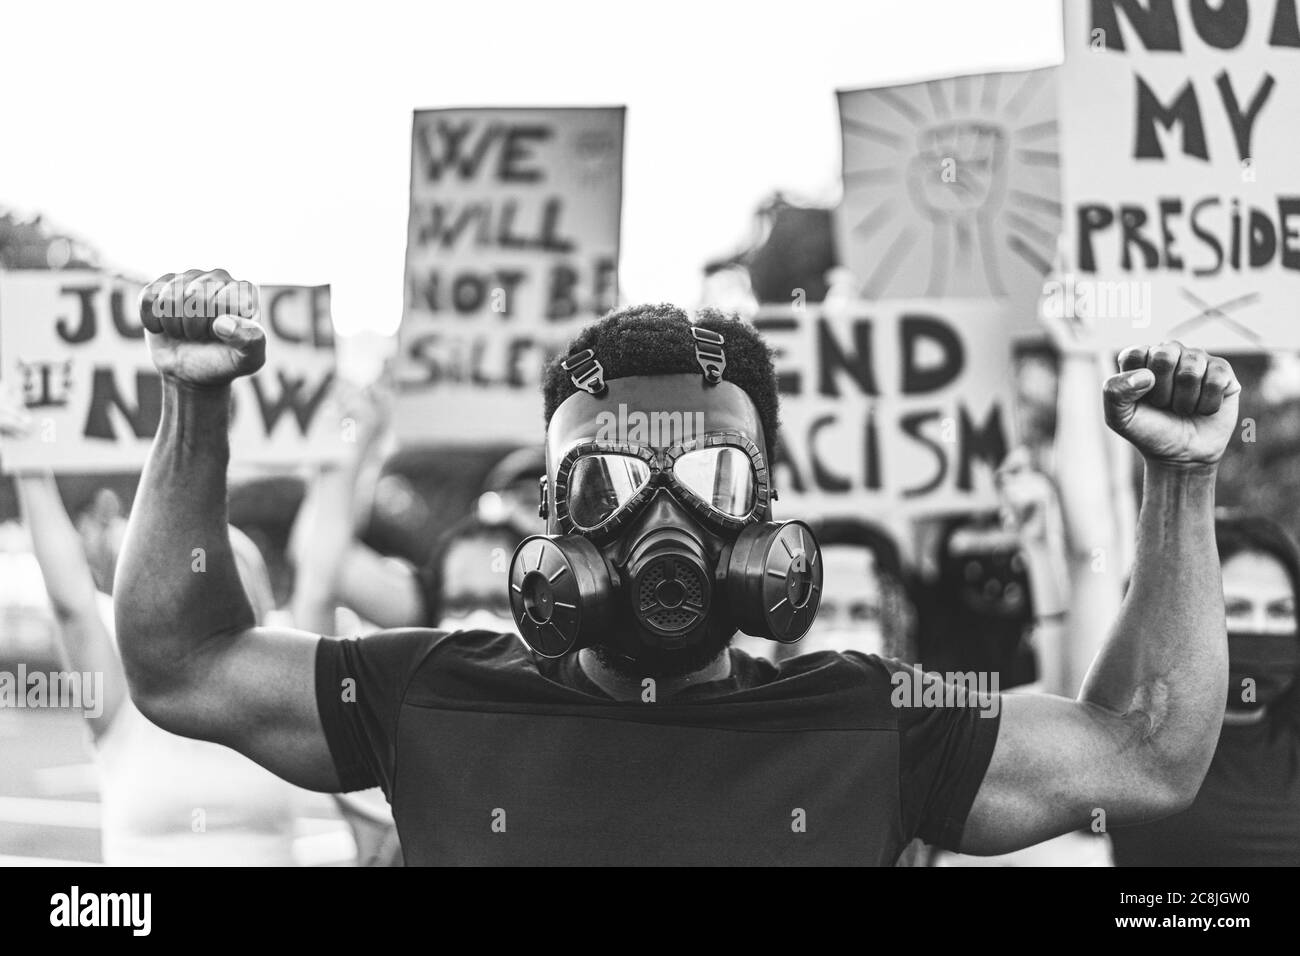 Menschen aus verschiedenen Kulturen und Rassen protestieren auf der Straße für Gleichberechtigung - Demonstranten tragen Gesicht und Gasmasken während schwarze Leben Angelegenheit Fi Stockfoto